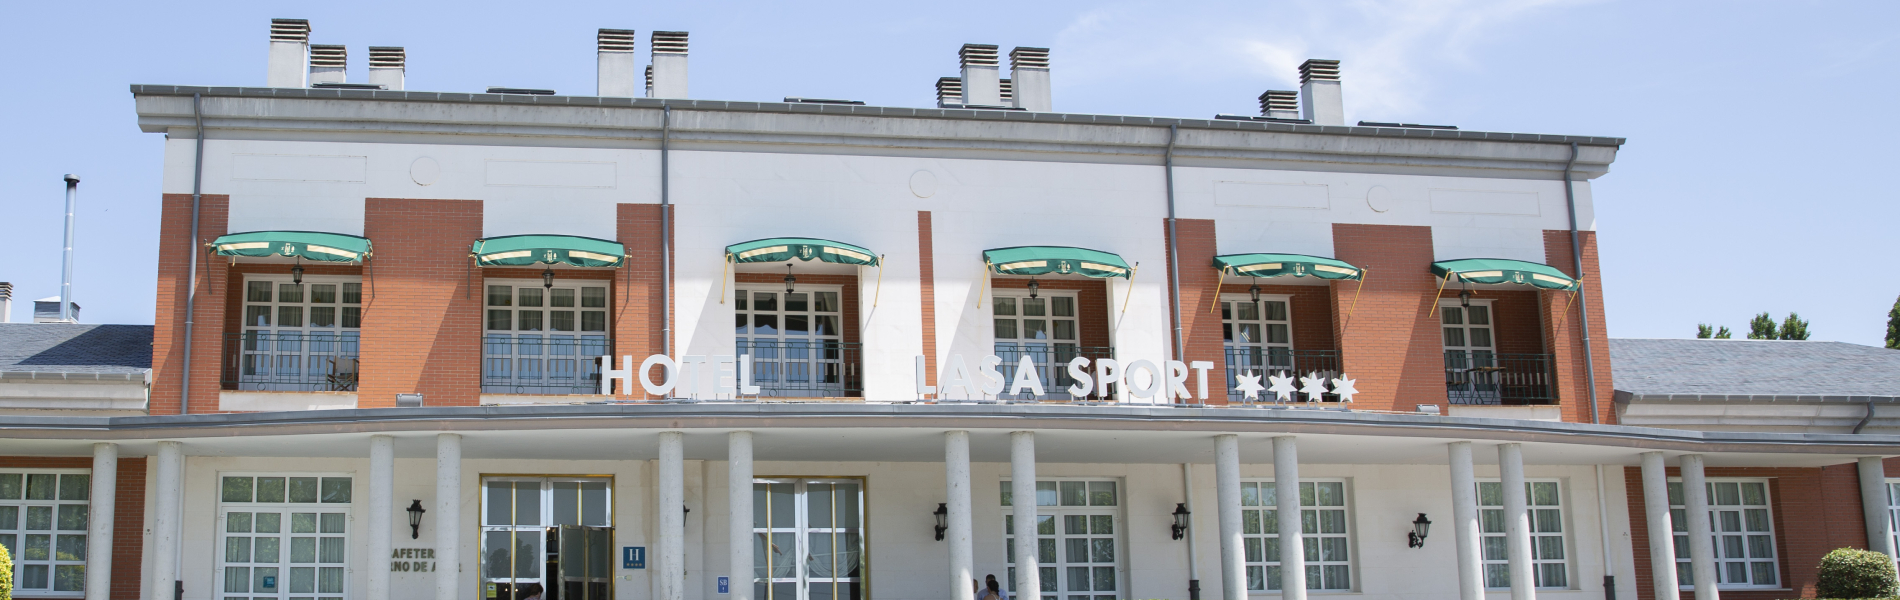 Hotel Lasa Sport  header